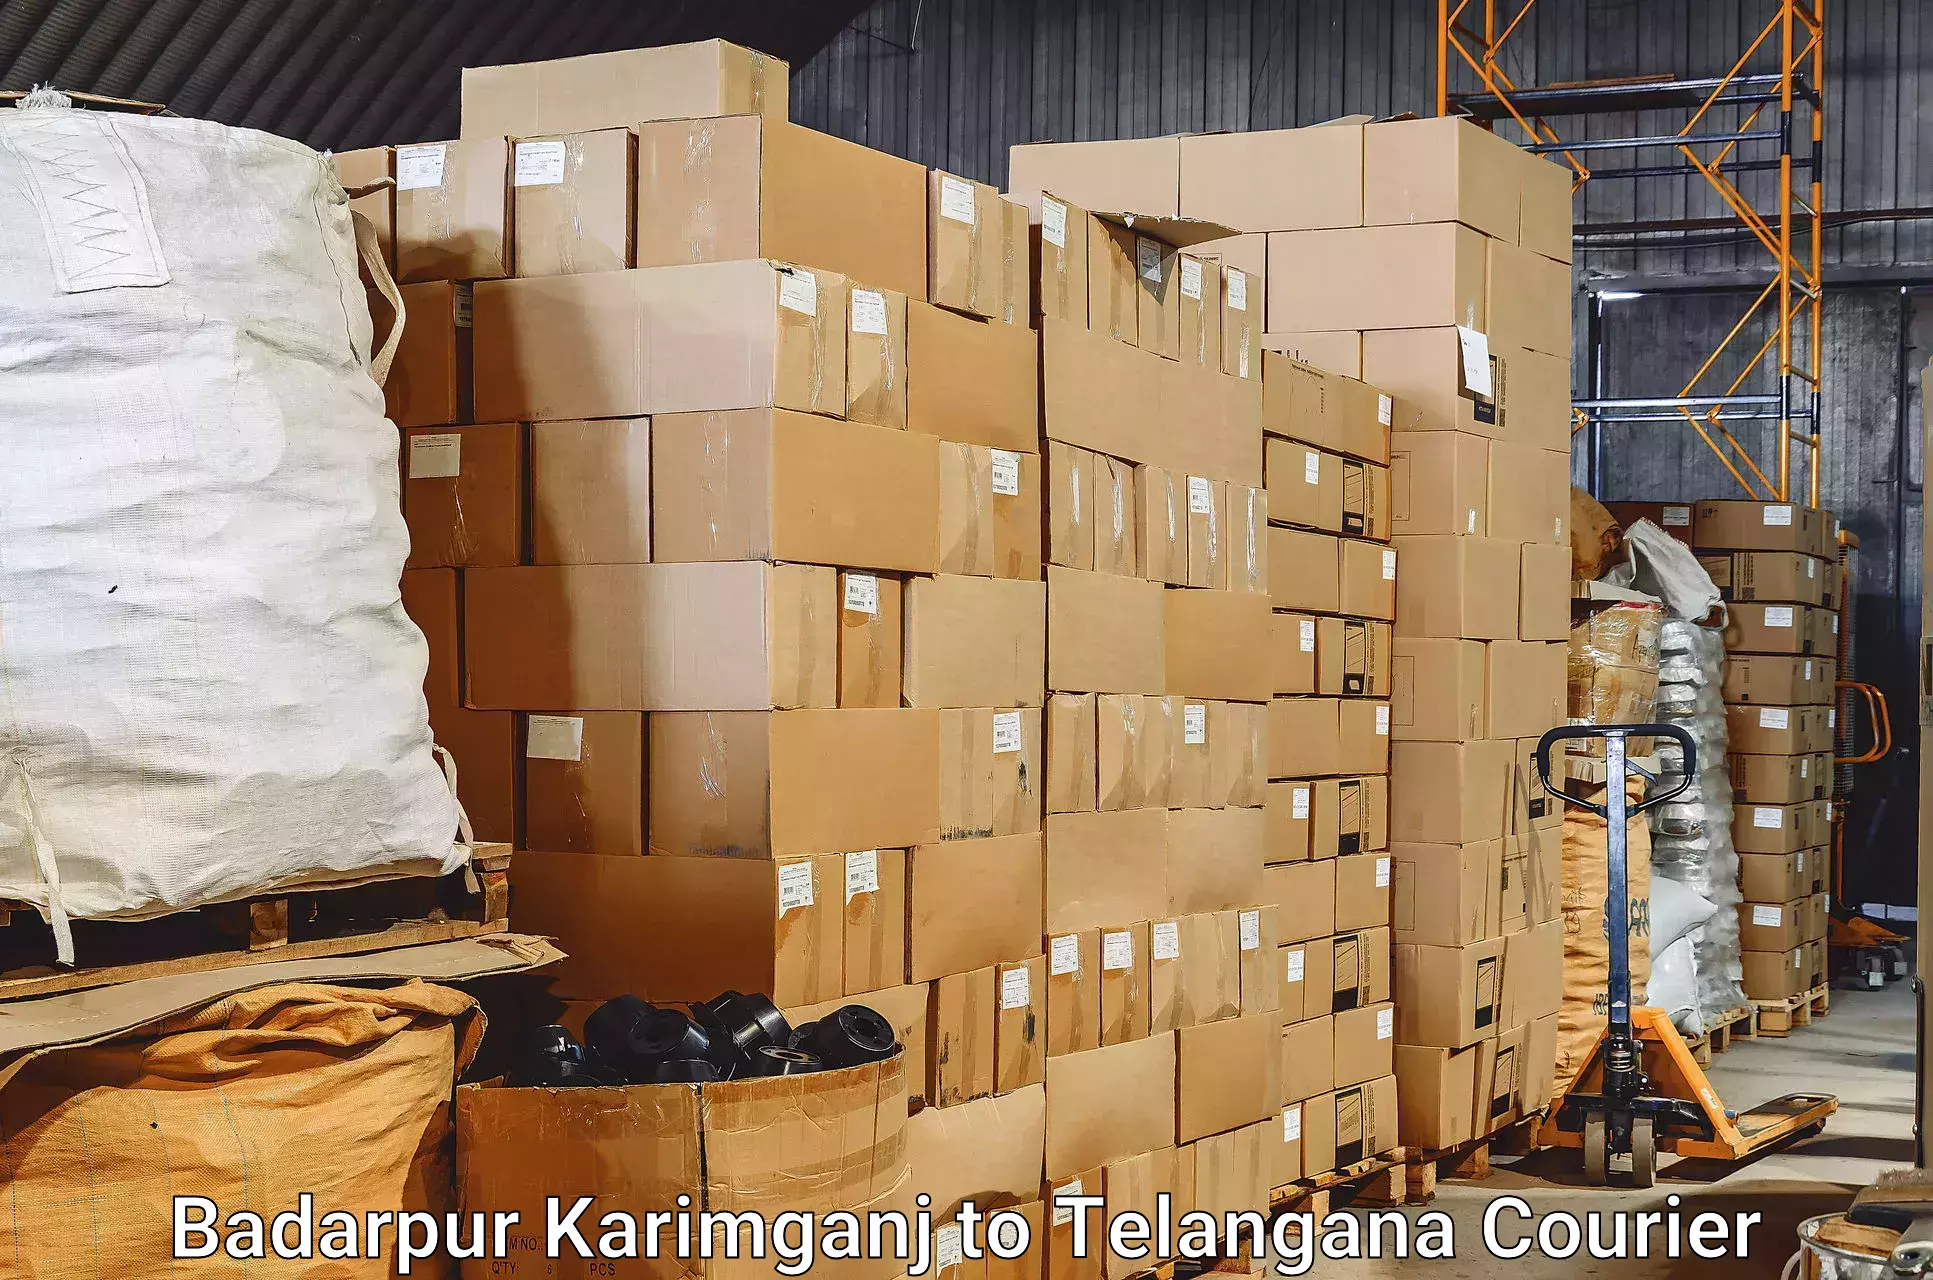 Doorstep luggage pickup Badarpur Karimganj to Sathupally